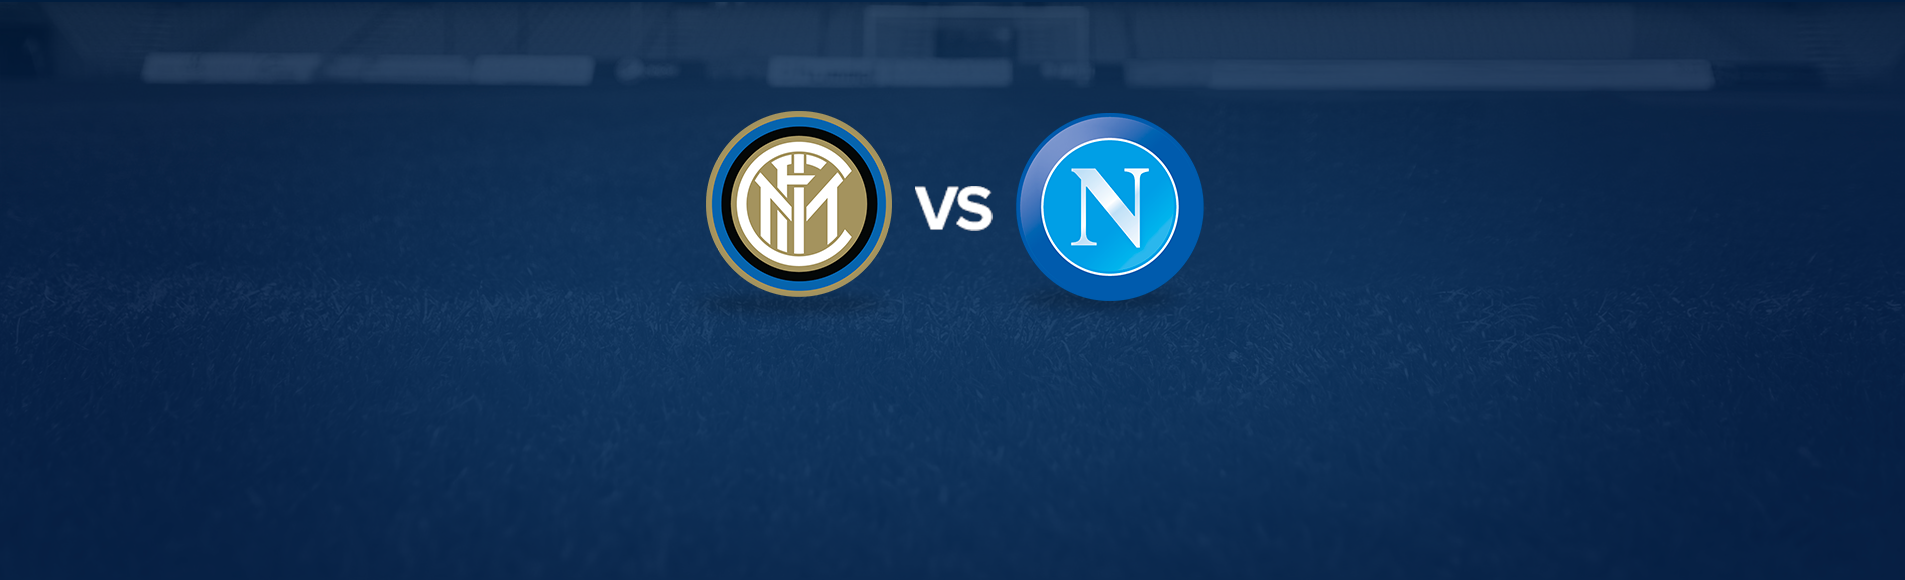 Inter-Napoli: dove vedere la partita in tv e diretta streaming - NAPOLI CALCIO